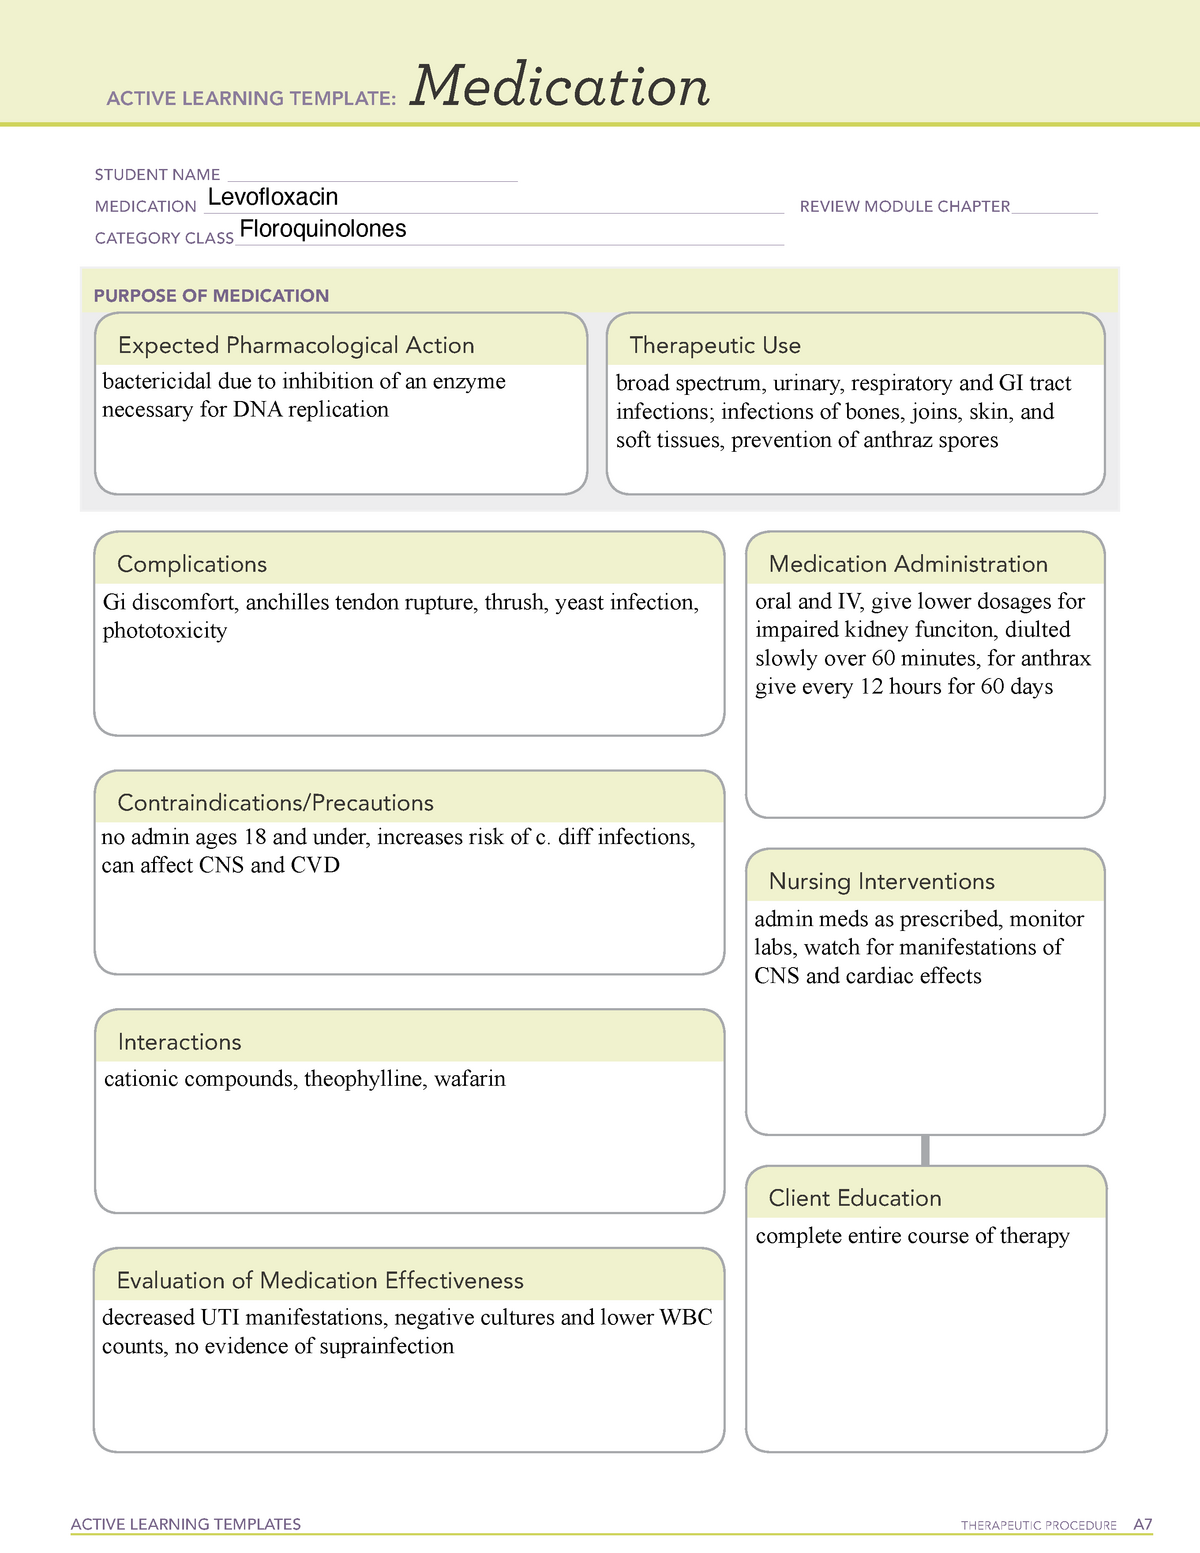 levofloxacin-medication-template